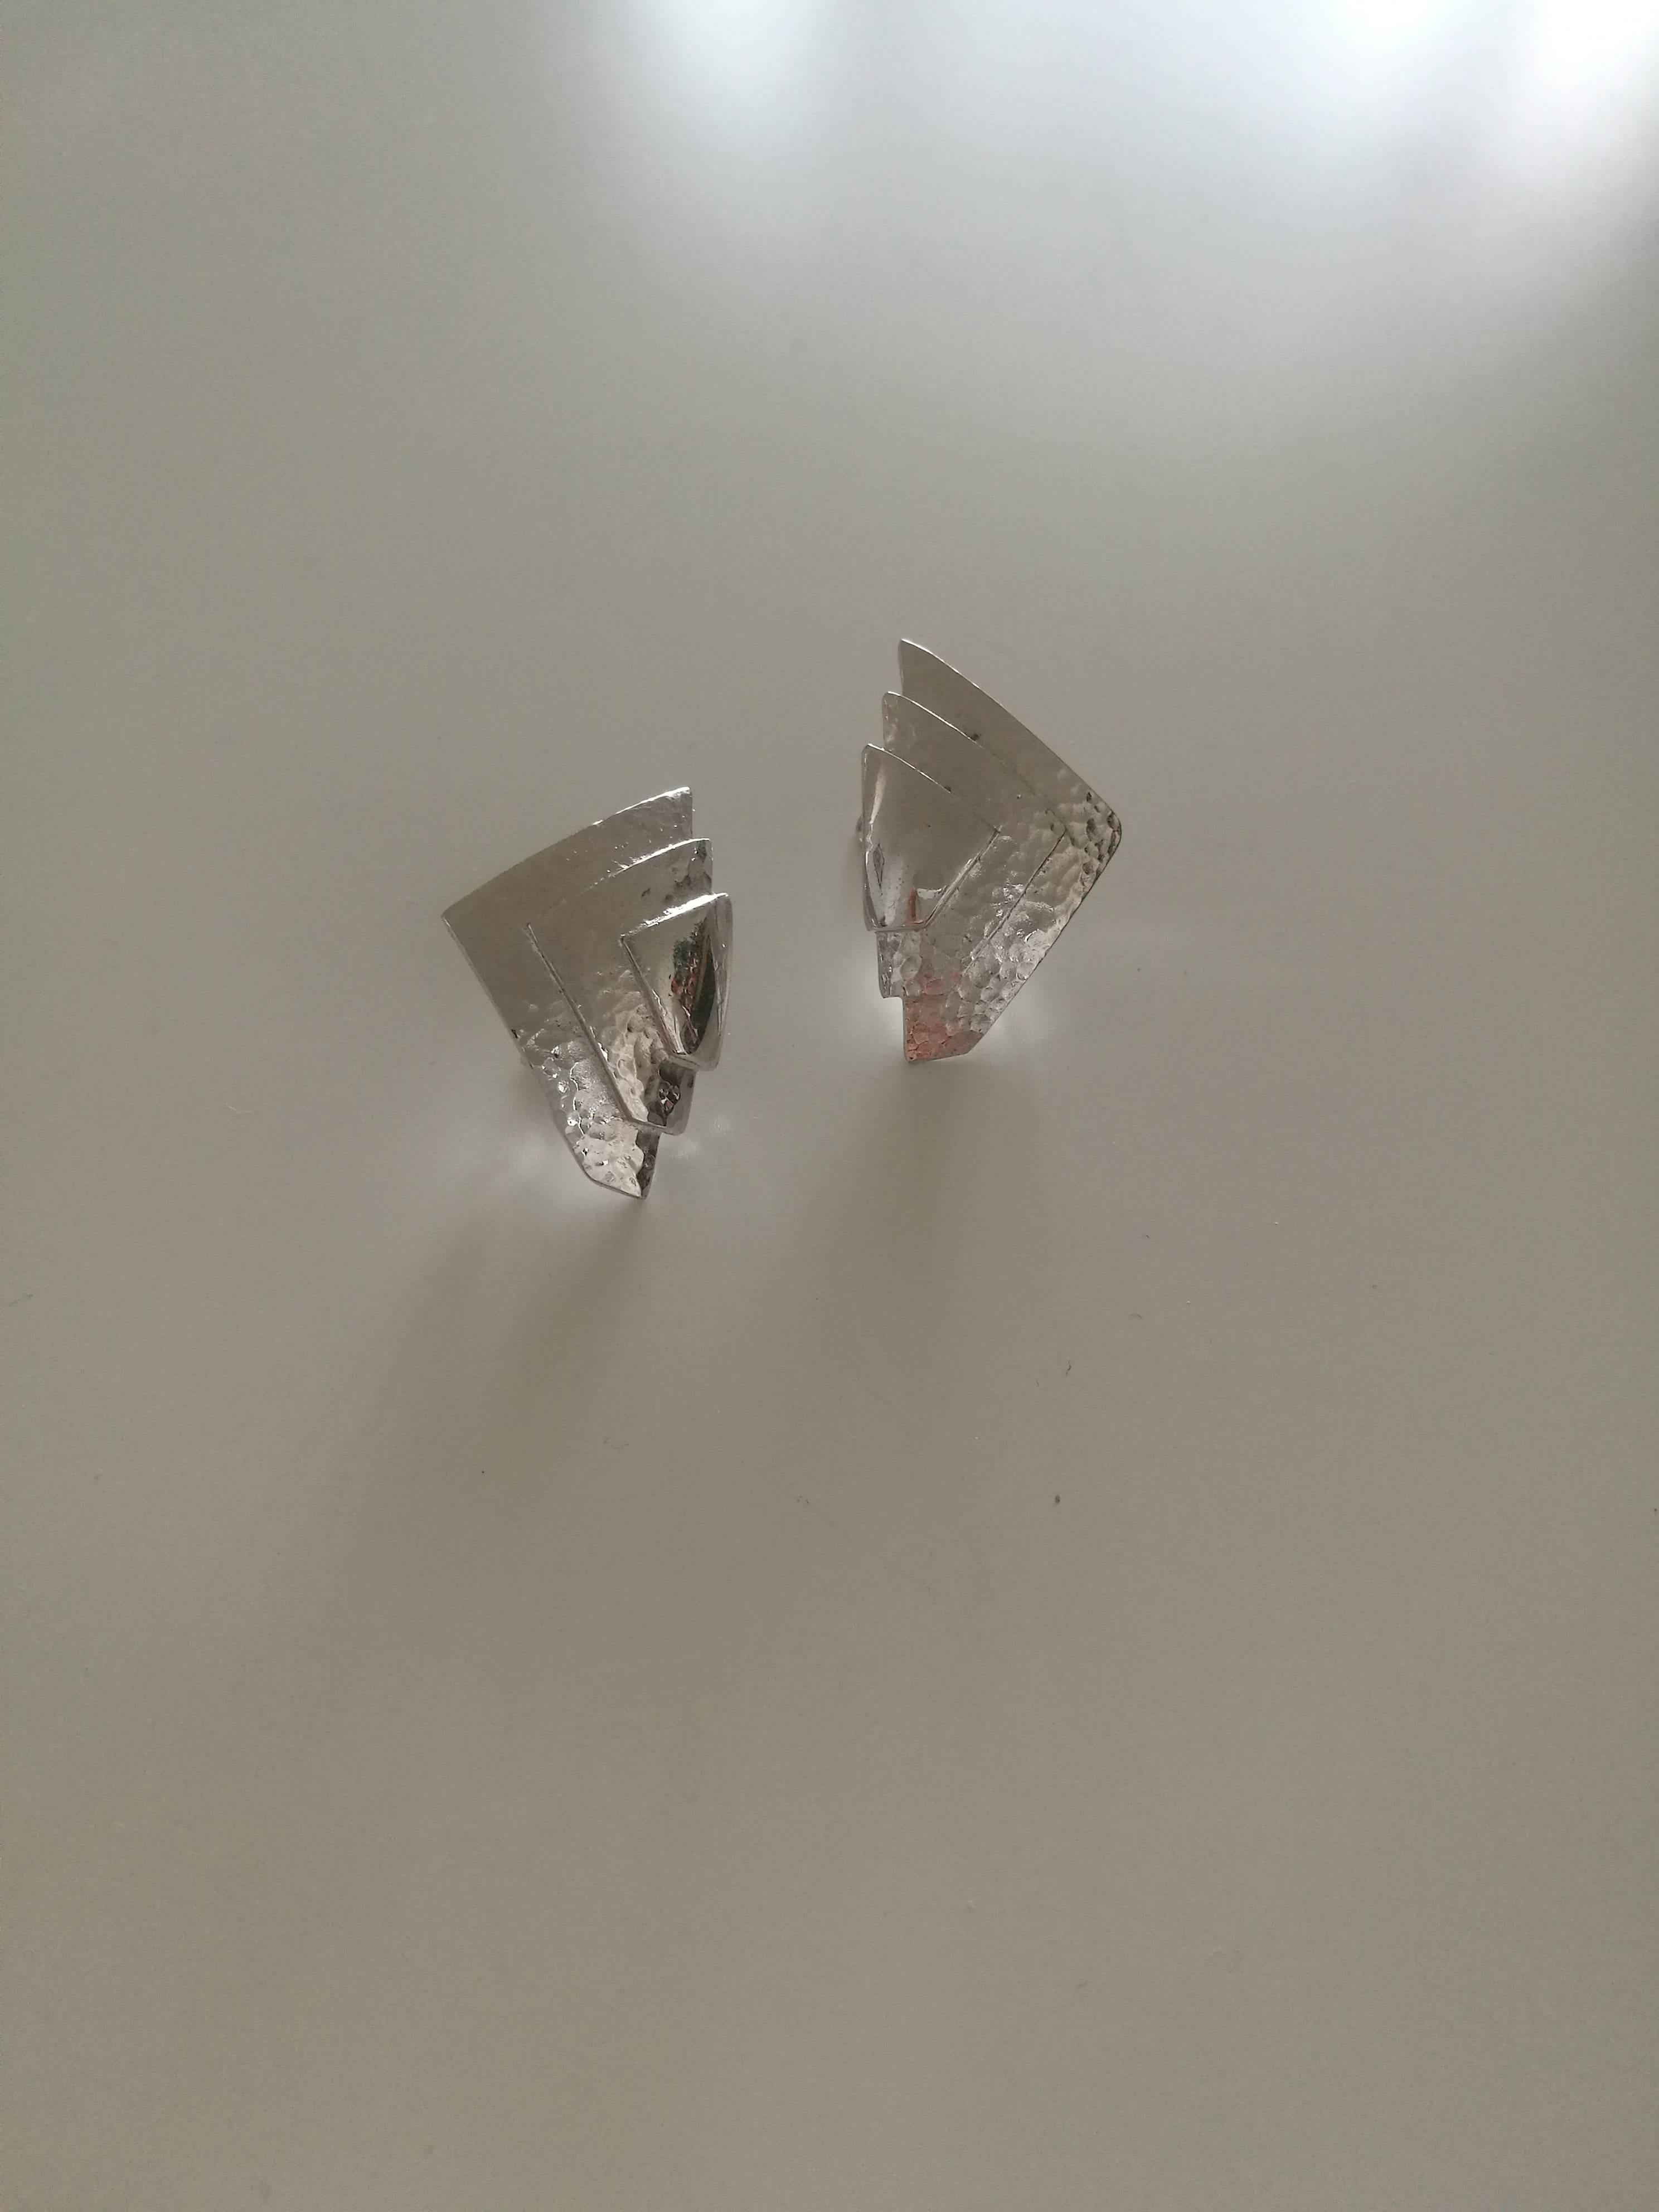 monet silver clip on earrings